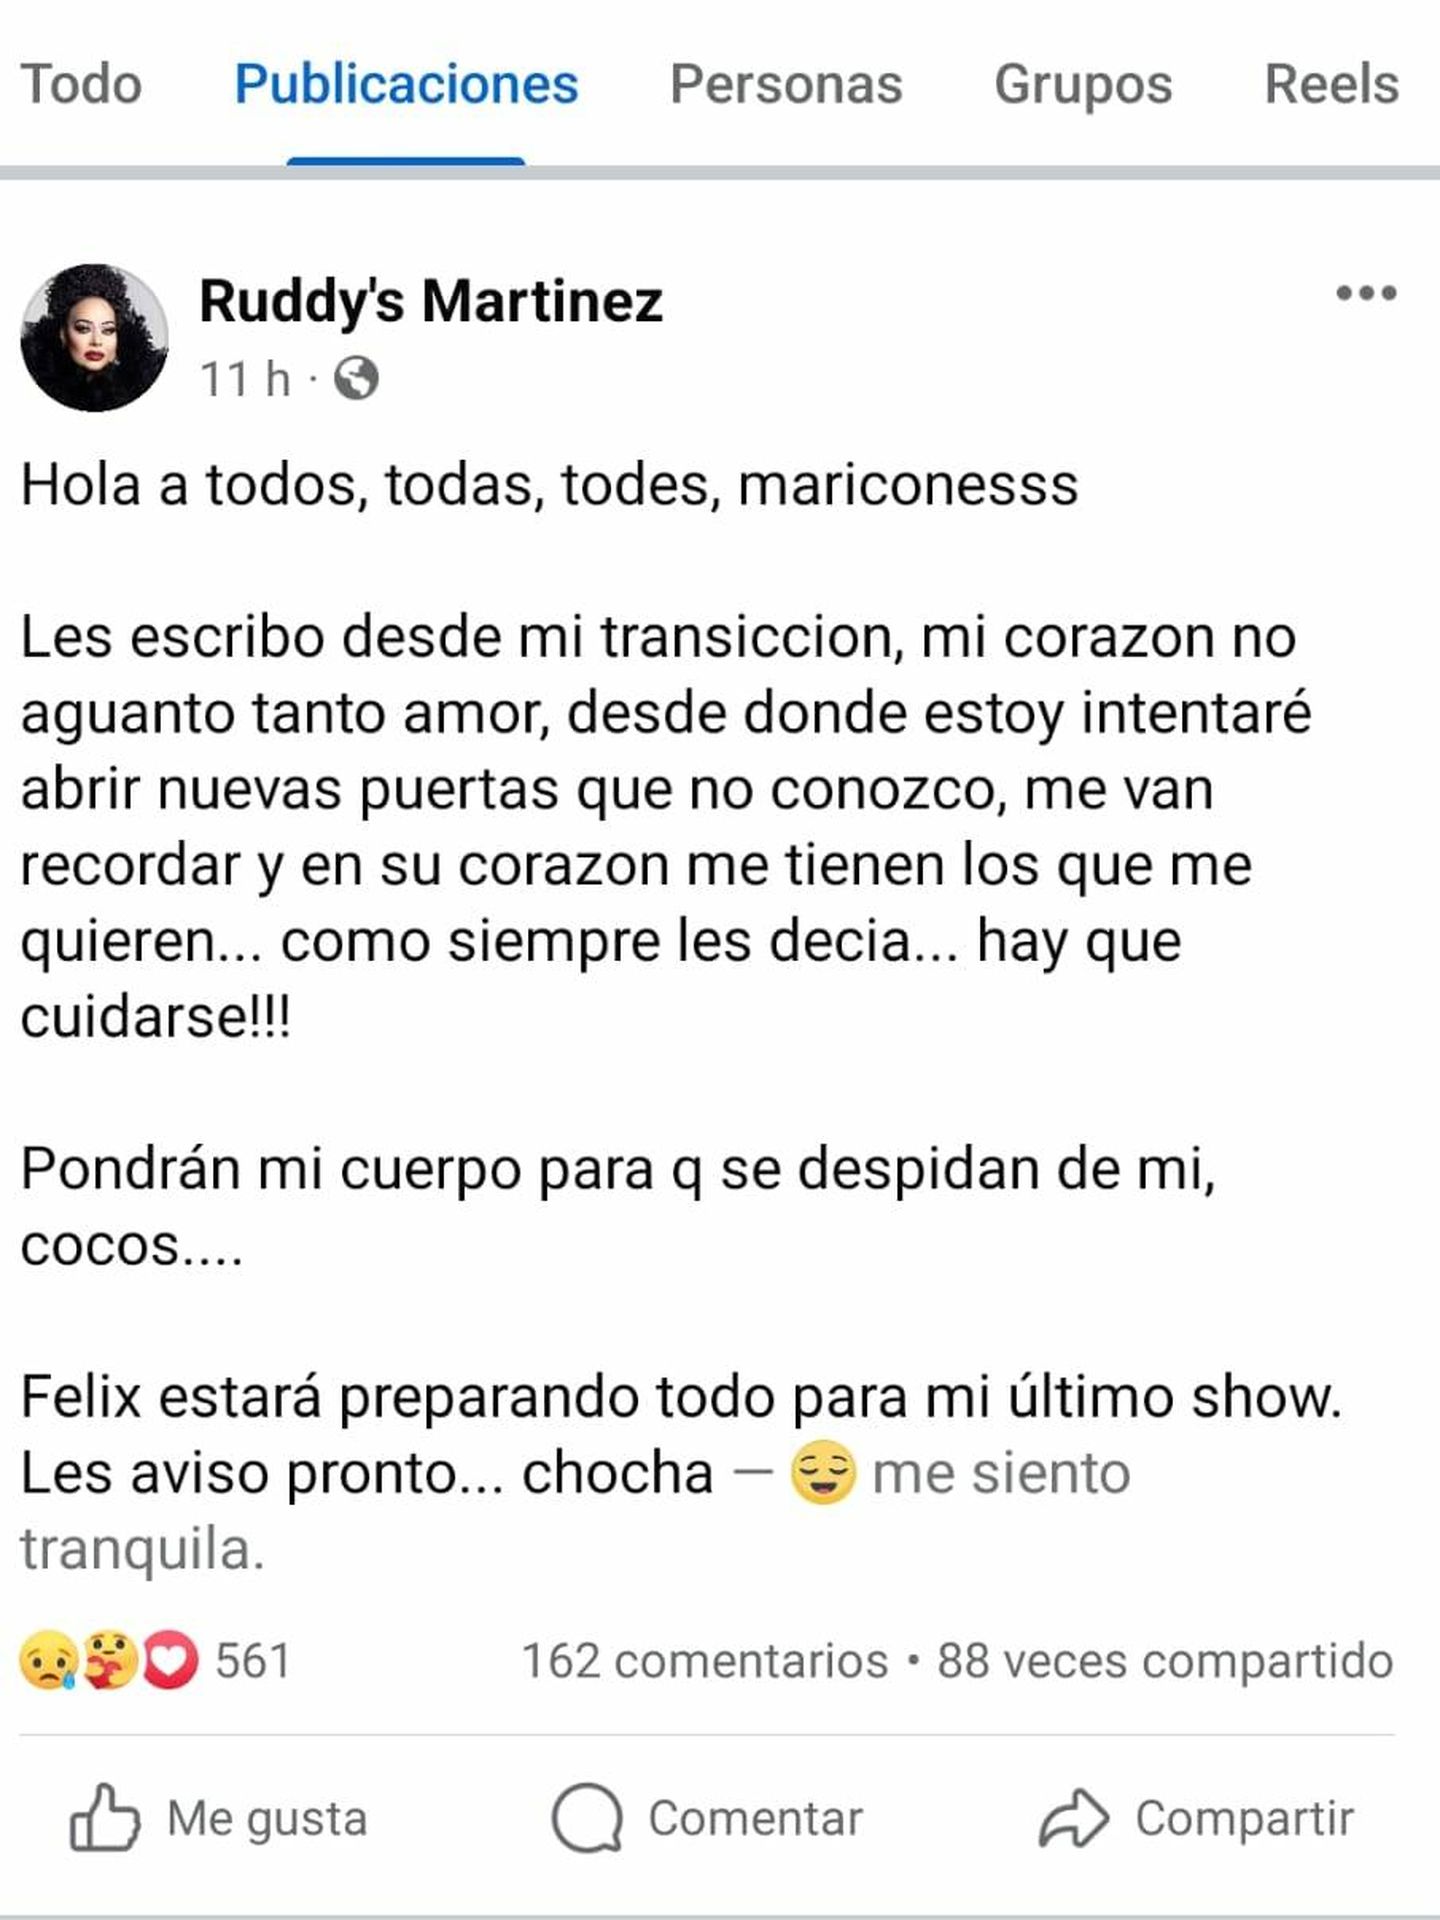 Captura de imagen del perfil de Facebook de Ruddy's Martínez. (Cortesía)